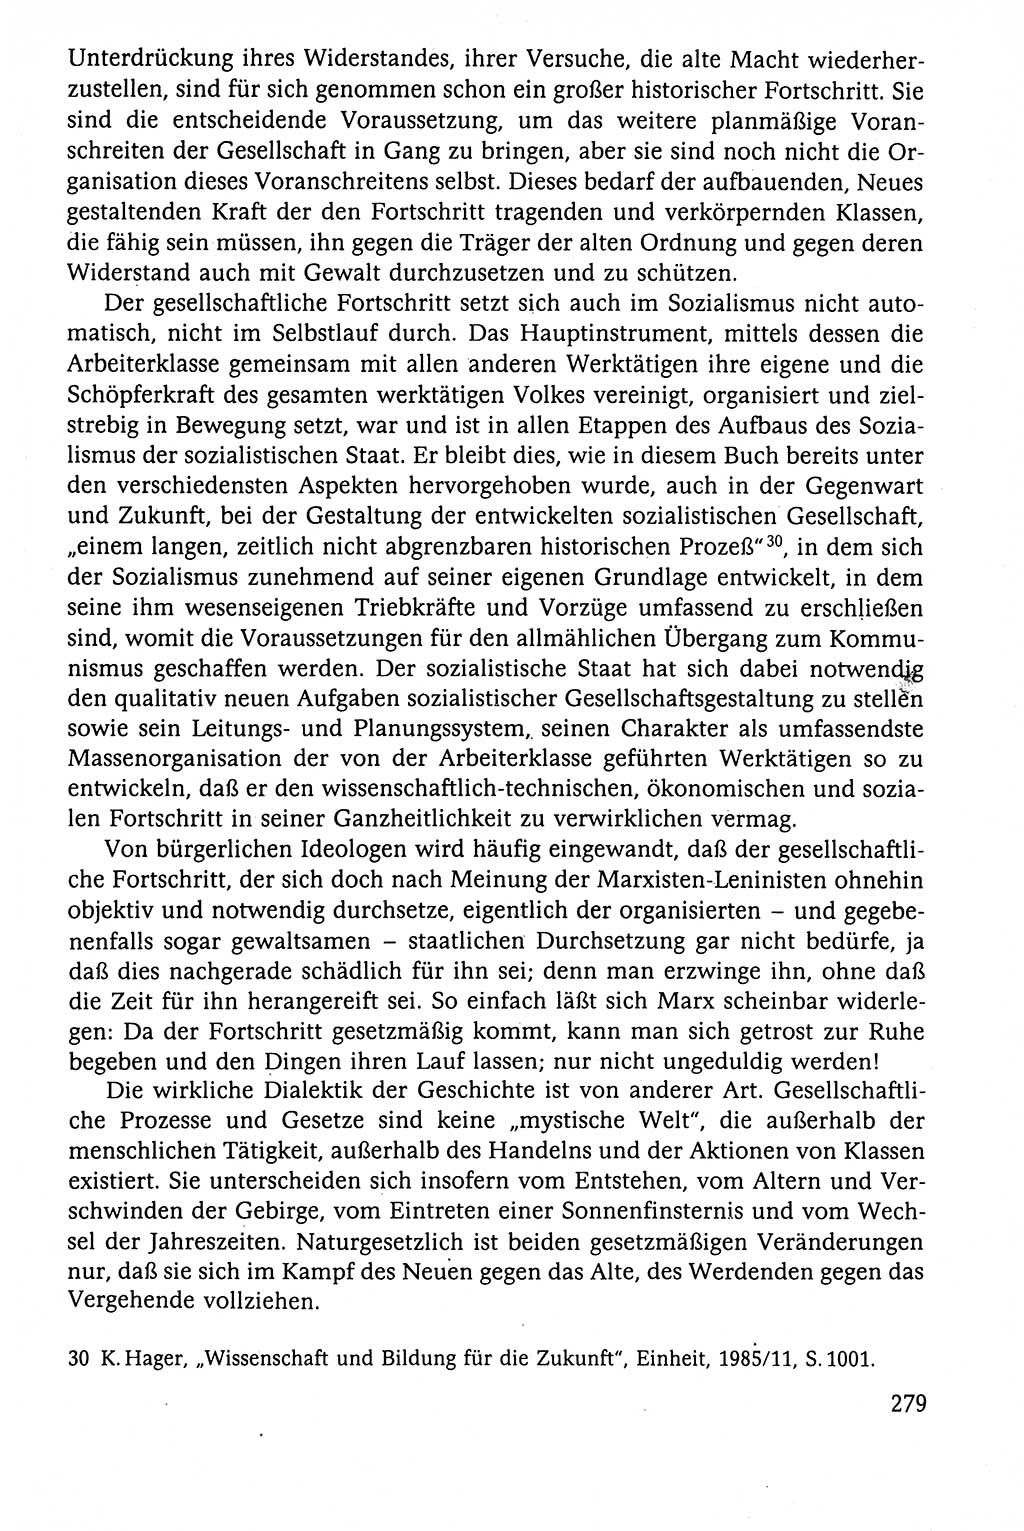 Der Staat im politischen System der DDR (Deutsche Demokratische Republik) 1986, Seite 279 (St. pol. Sys. DDR 1986, S. 279)